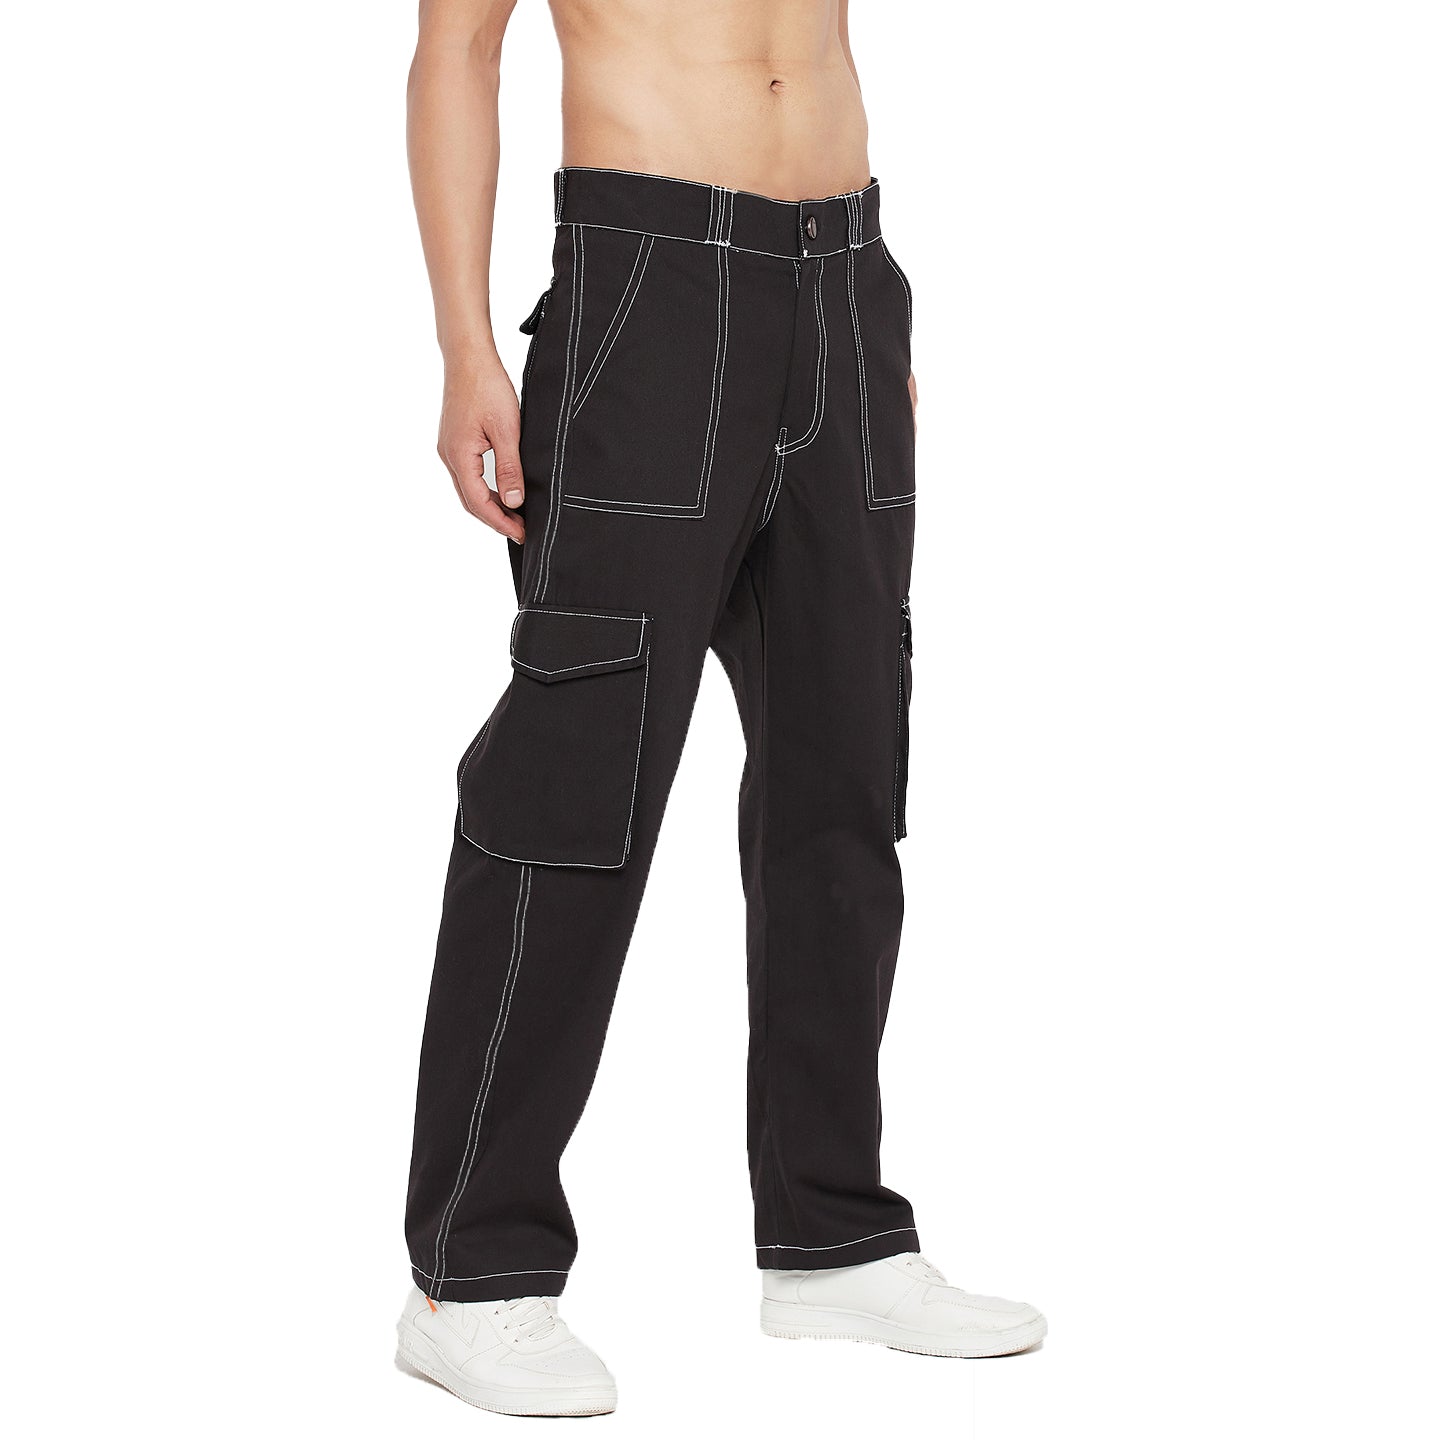 Buy Highlander Grey Cargo Trouser for Men Online at Rs818  Ketch